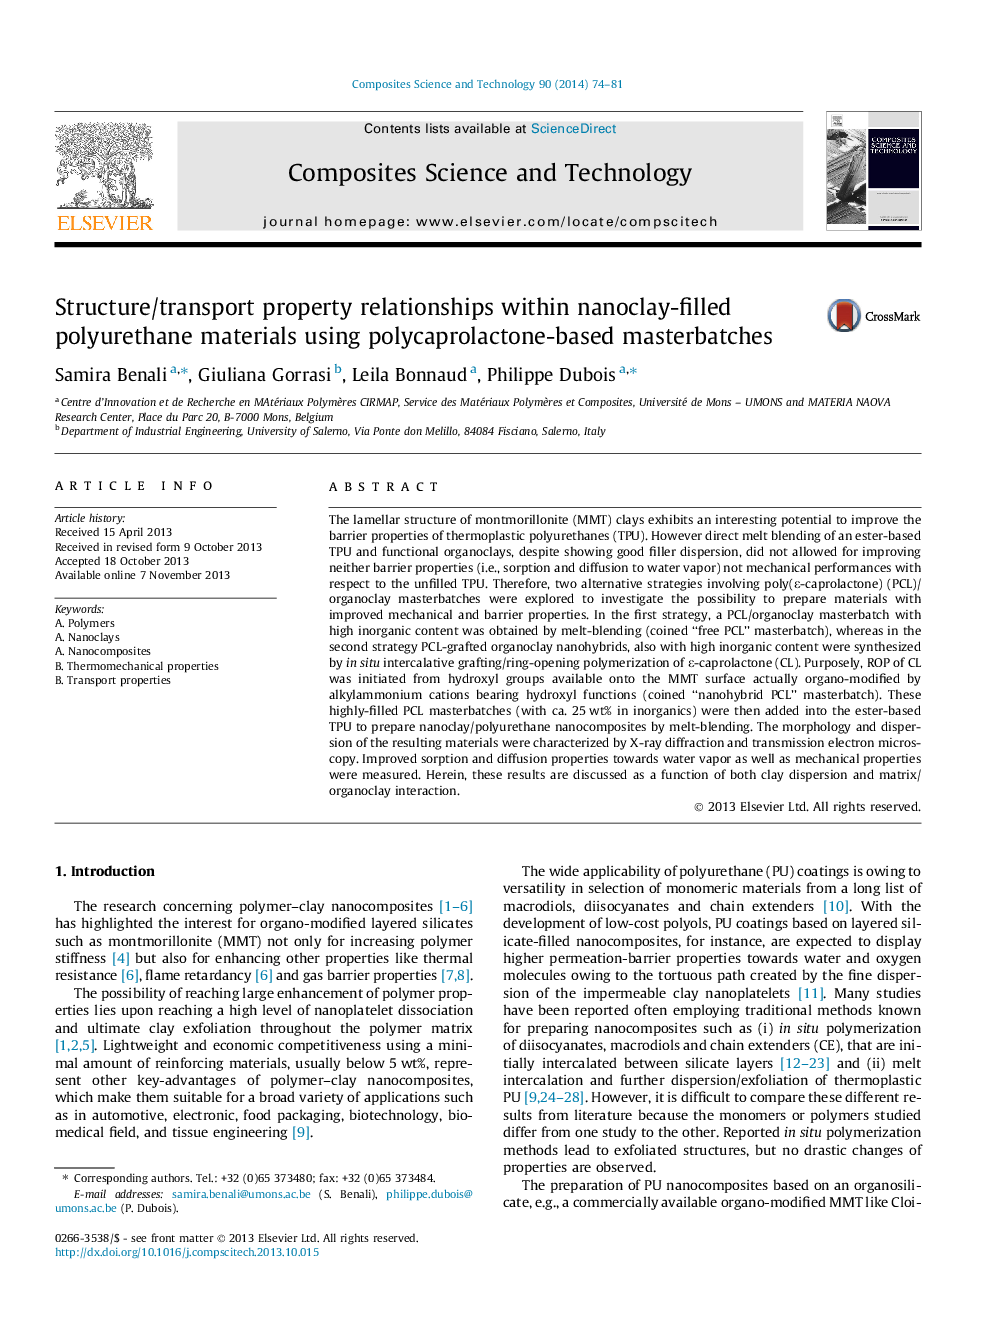 رابطه ساختار / حمل و نقل اموال در مواد پلی اورتان پر شده با نانوذرات با استفاده از کارتریج های مبتنی بر پلی کاپرولاکتون 